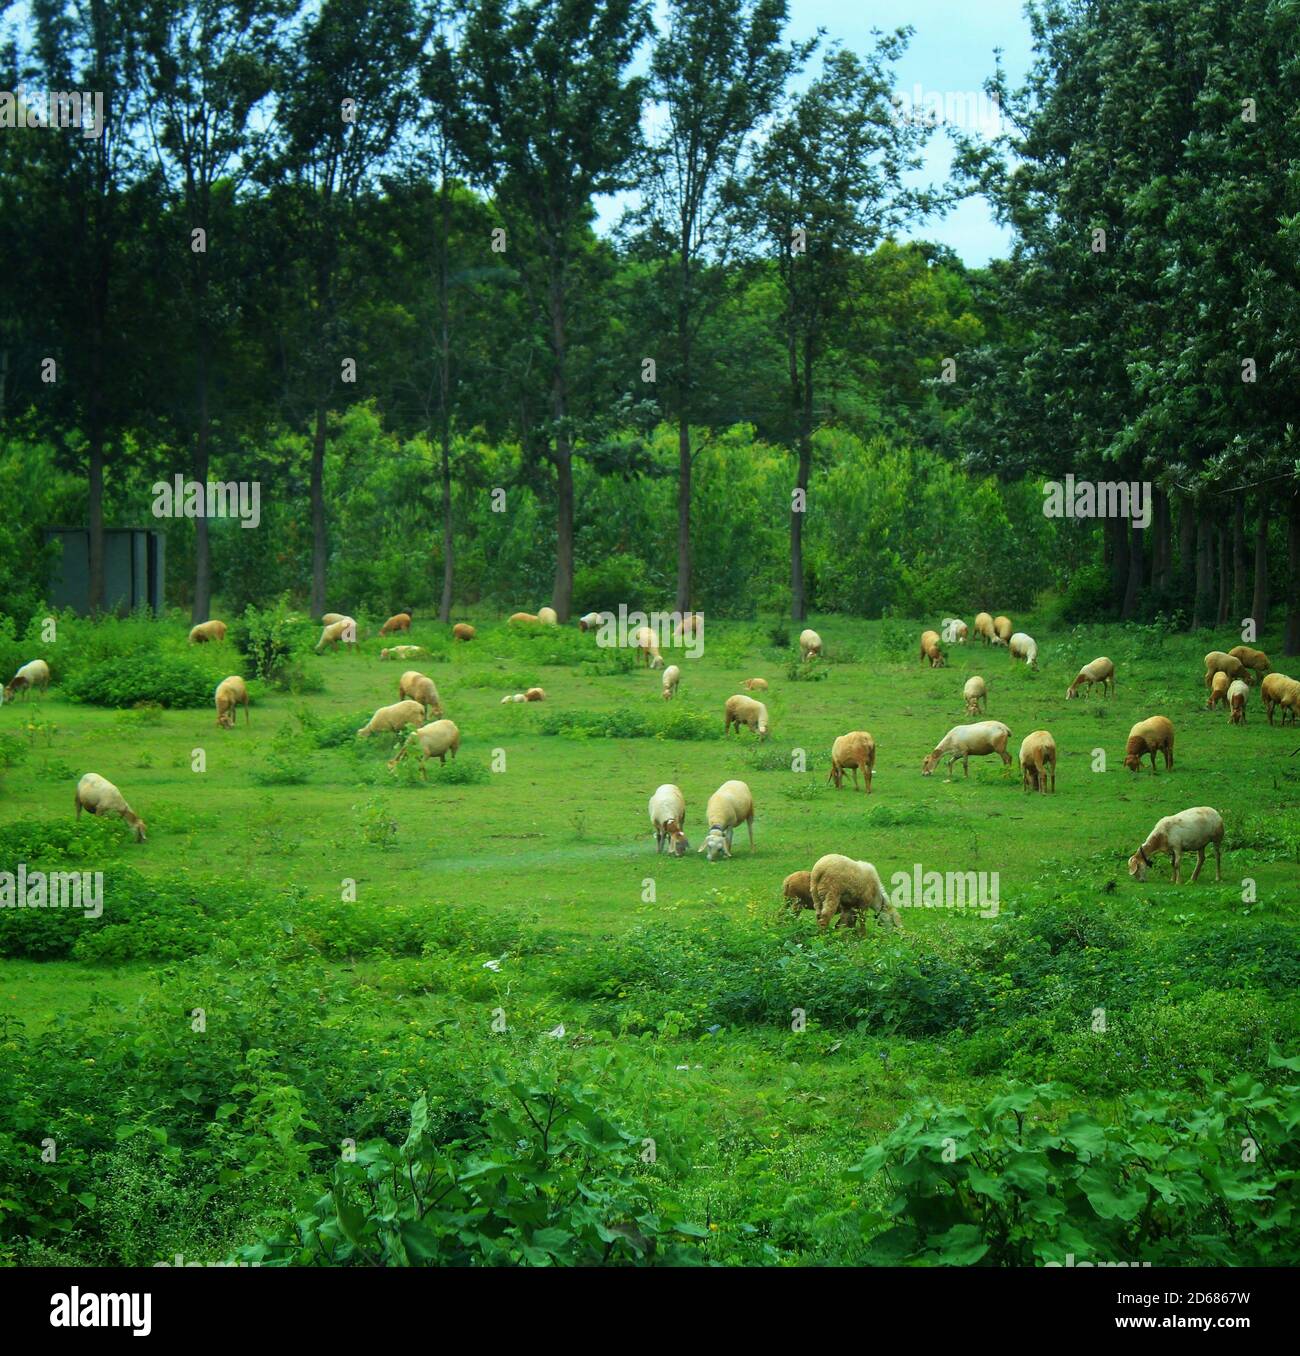 Weidende Schafe auf einem offenen Feld, Hirten aufpassen, so dass keine Schafe verloren ist und jeder ist in seiner Reichweite. Stockfoto